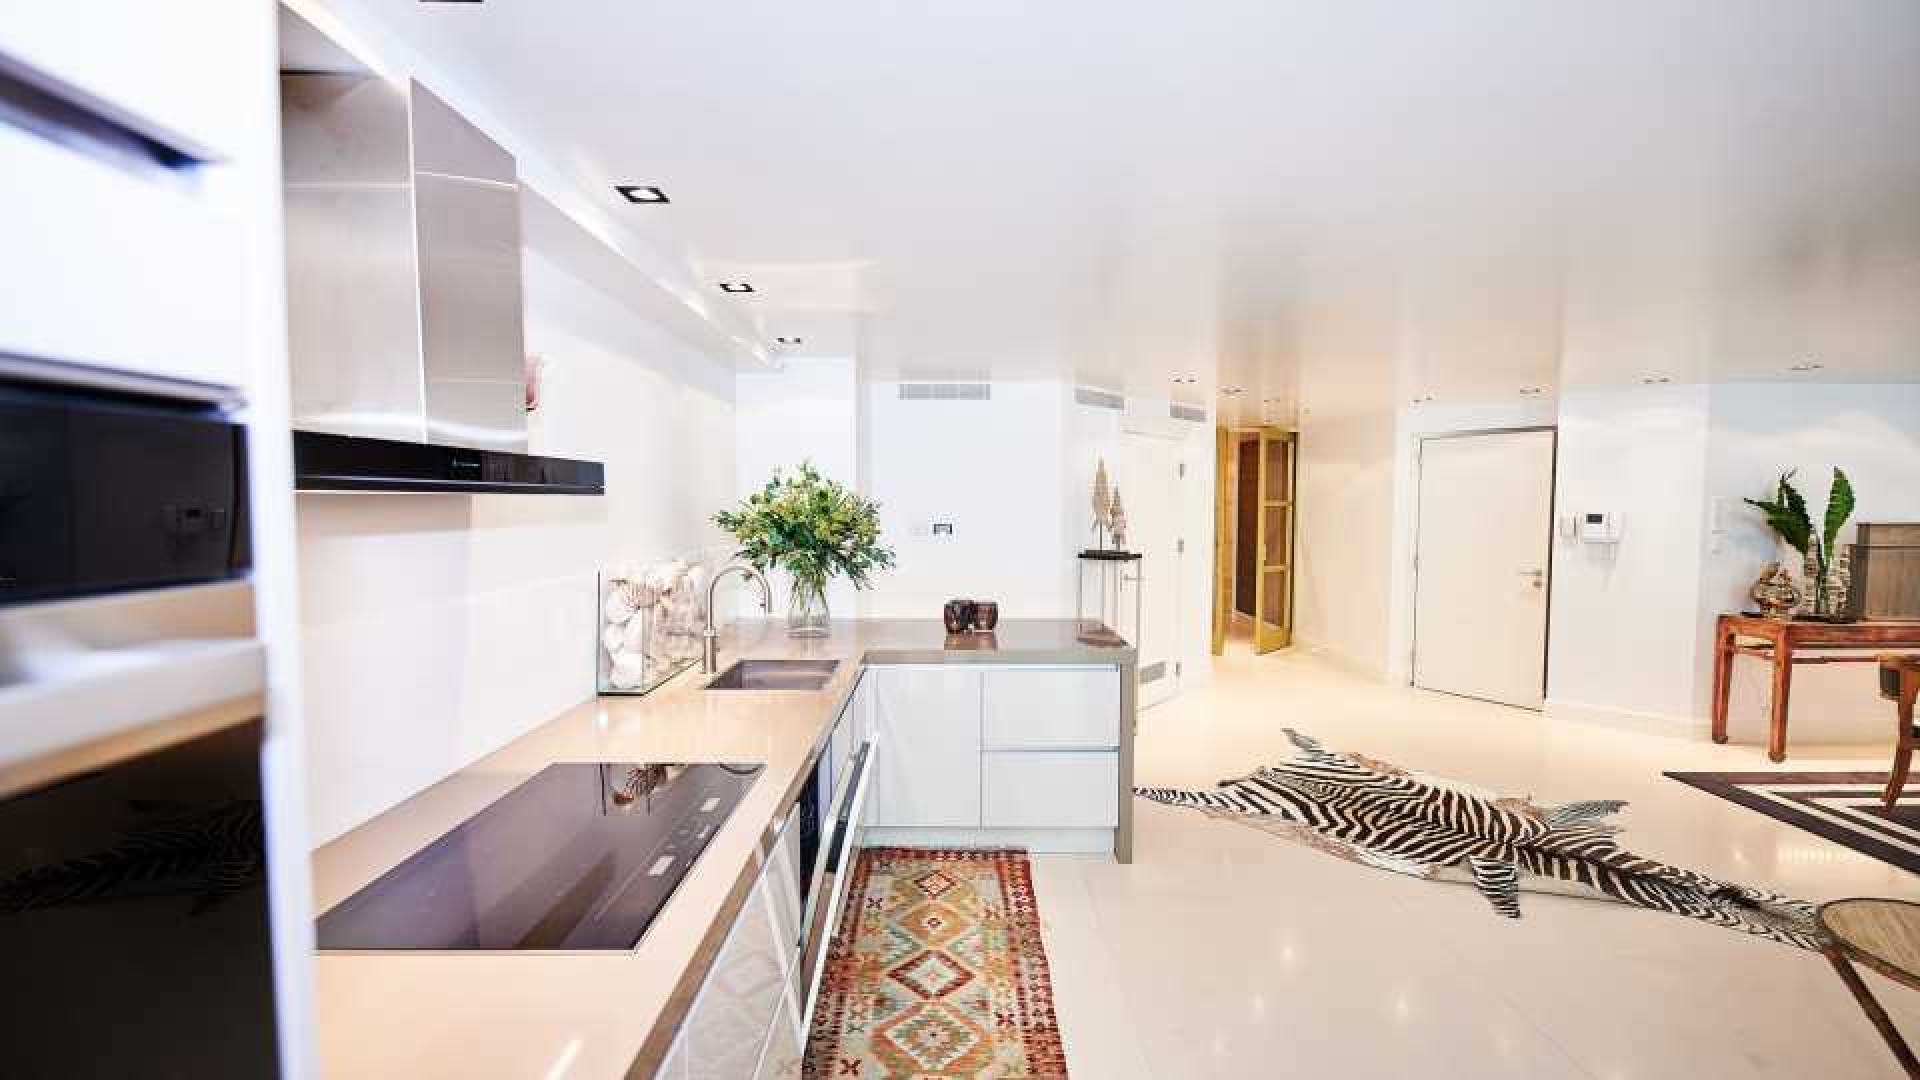 Connie Breukhoven zet haar tweede luxe appartement aan het Vondelpark te huur. Zie foto's